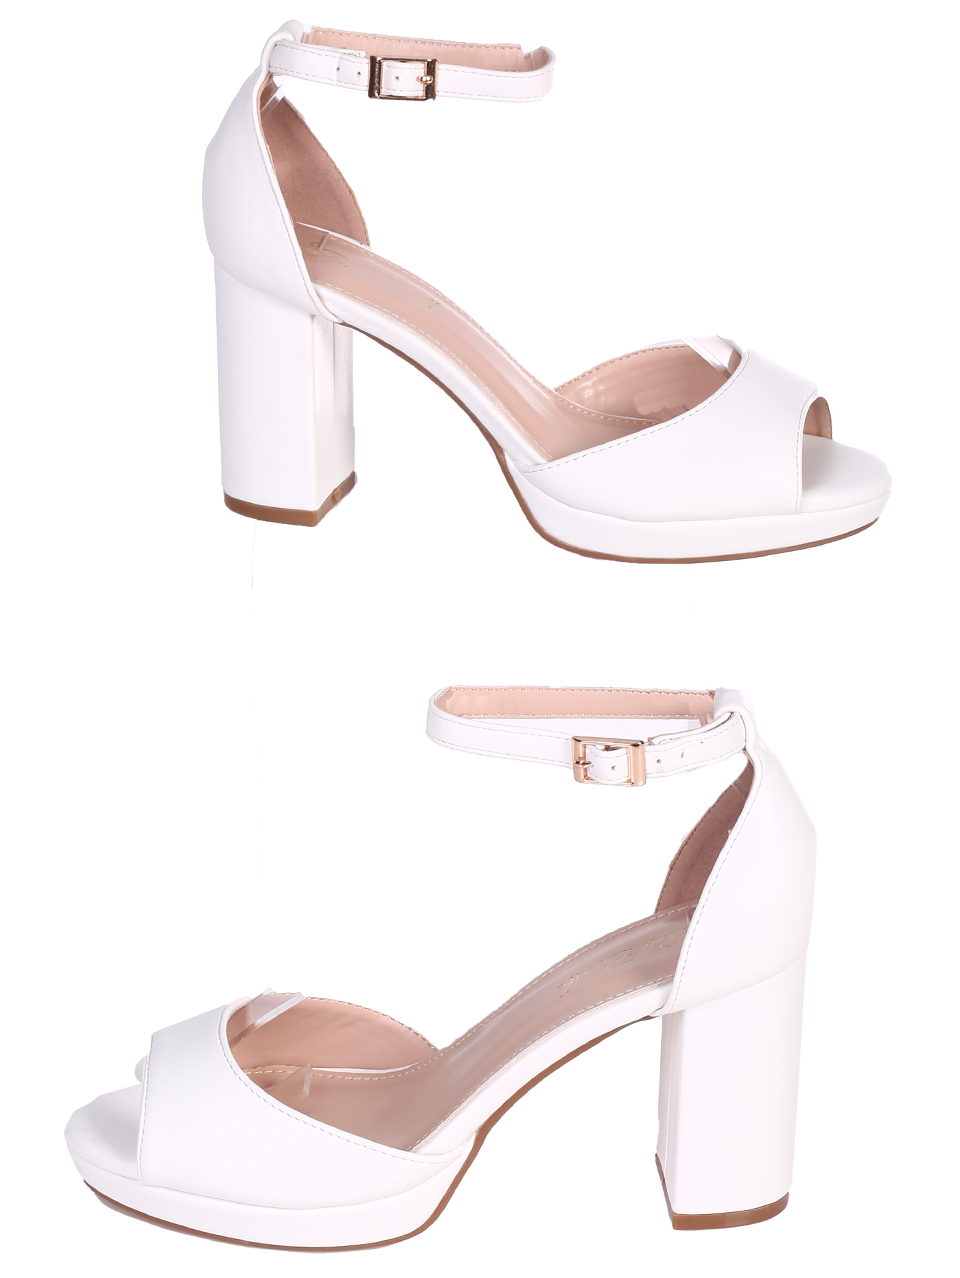 Елегантни дамски сандали в бяло 4M-24020 white pu